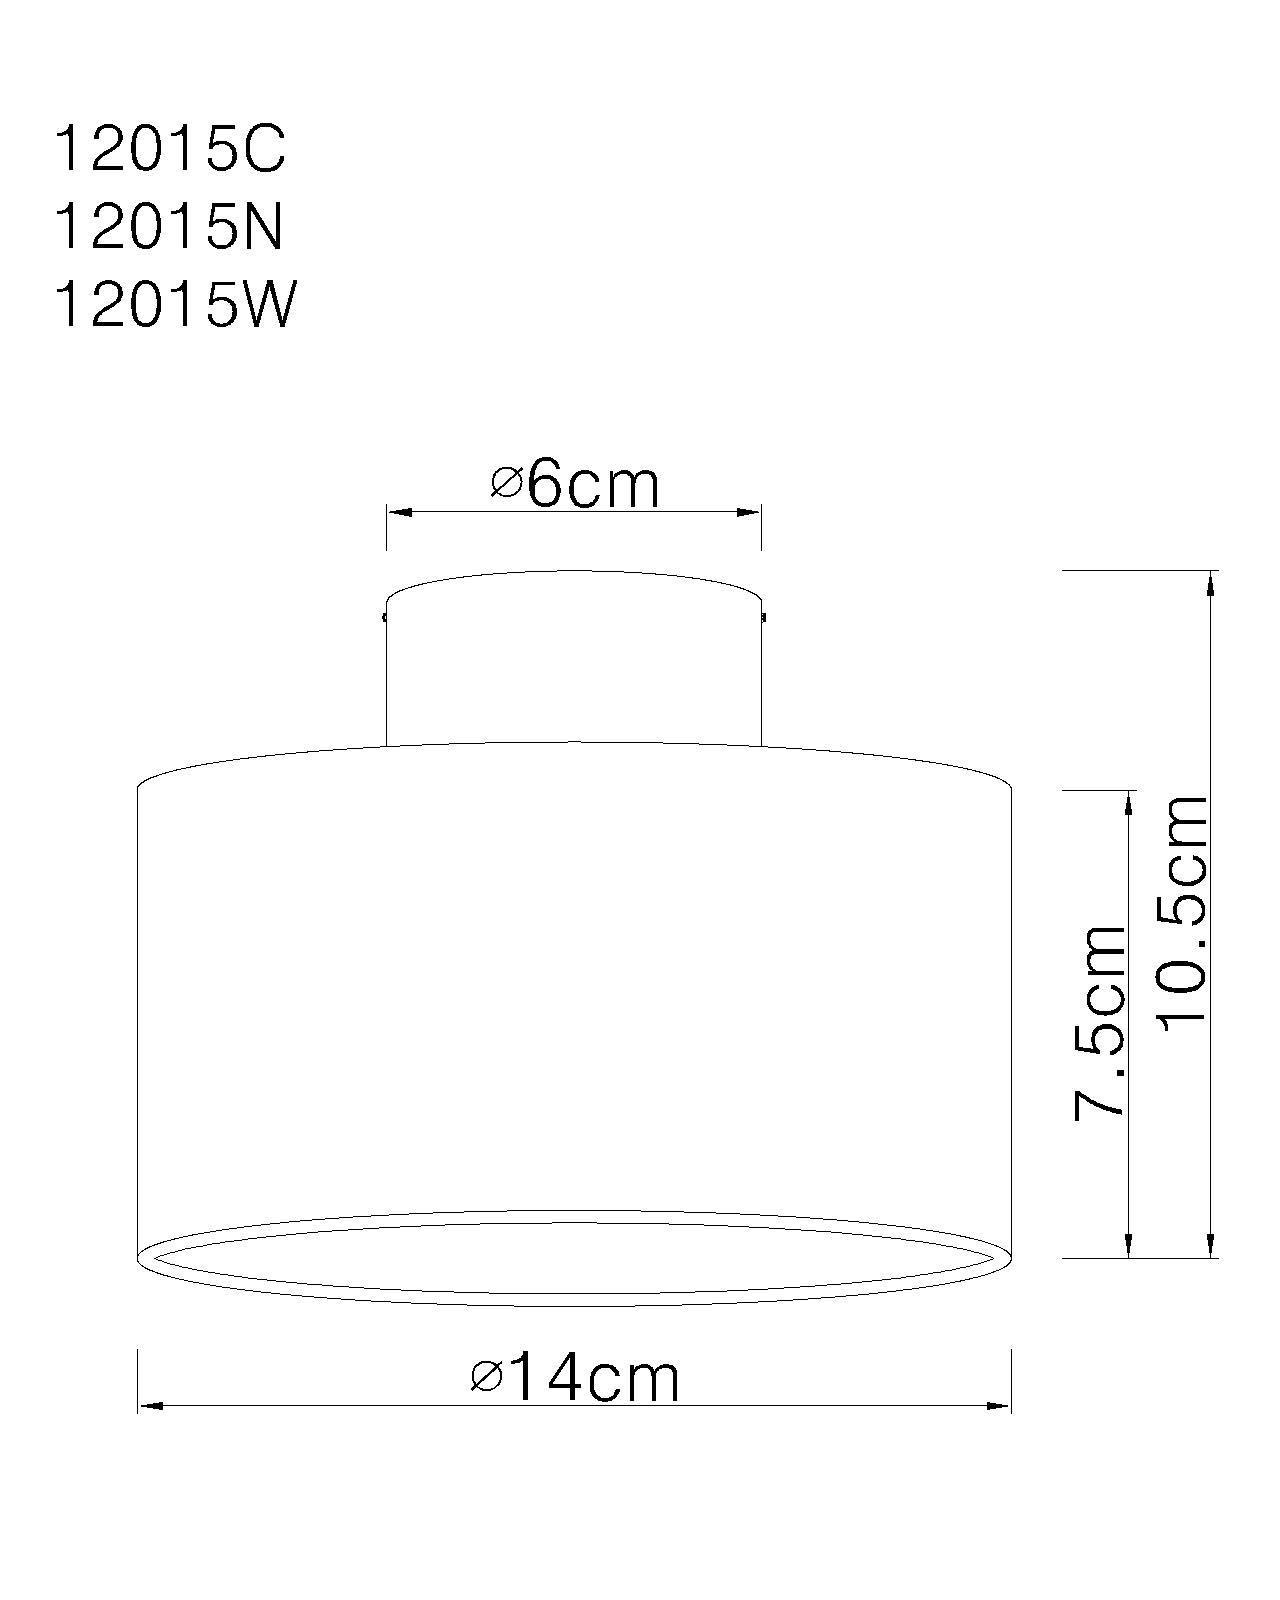 Plafoniera da soffitto GLOBO serie JENNY, cromata, lampadina inclusa 8W, 280 lm, 3000K